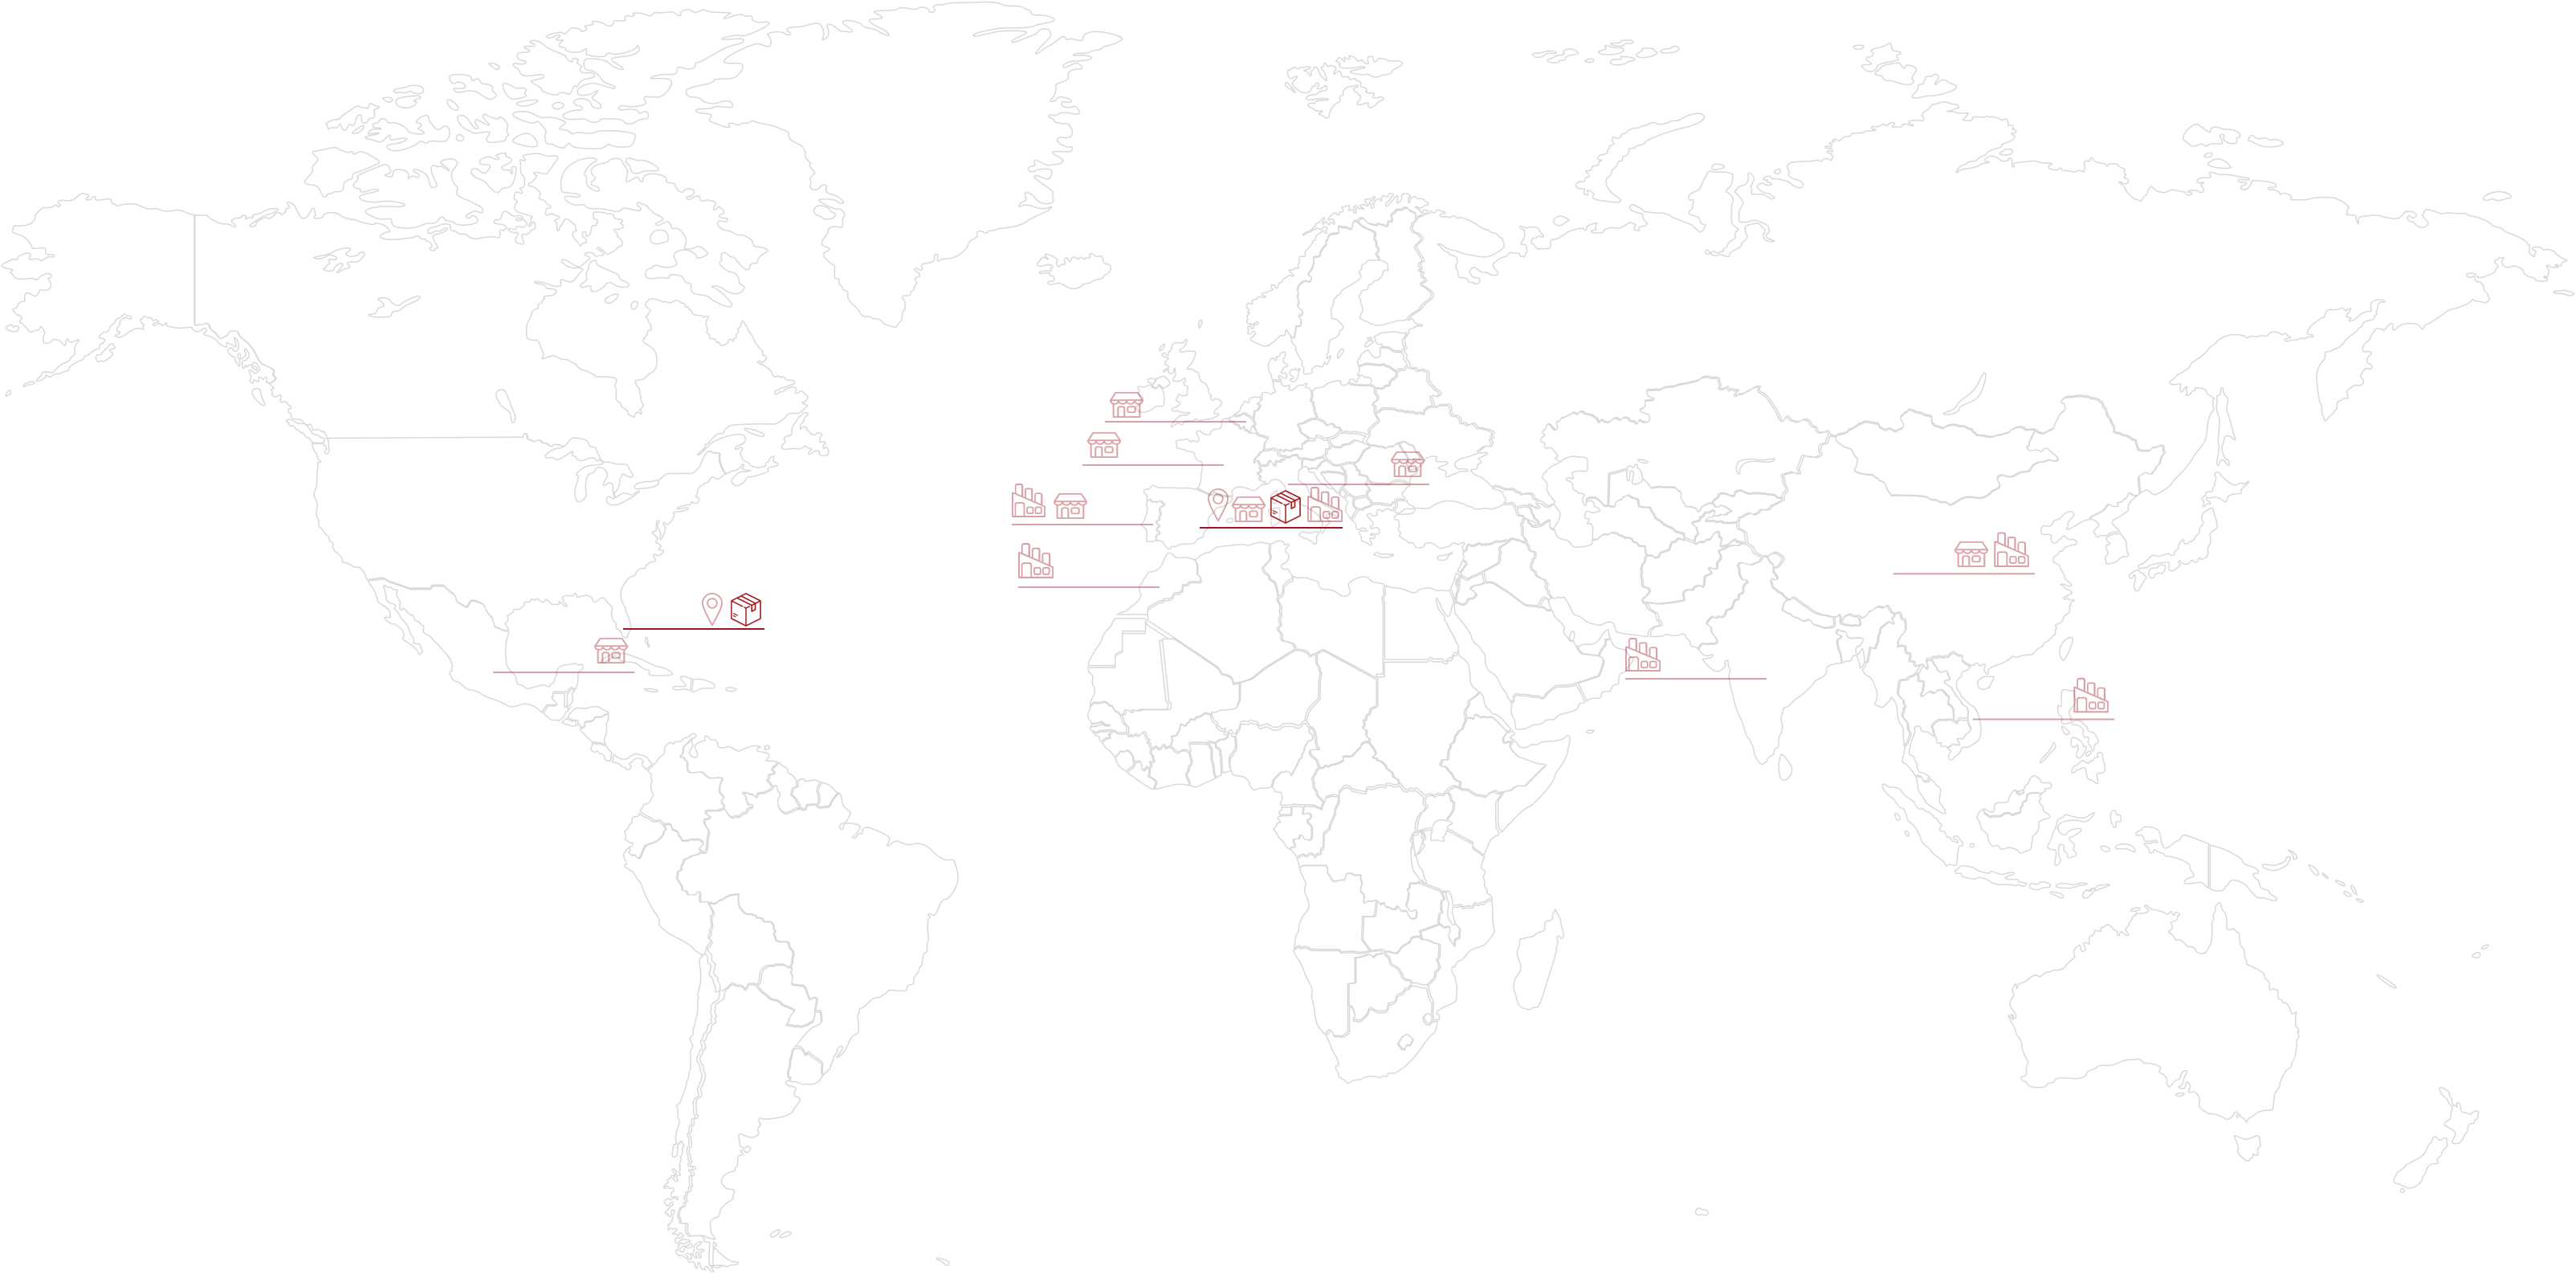 Mapa mundial con las localizaciones de los centros logísticos.